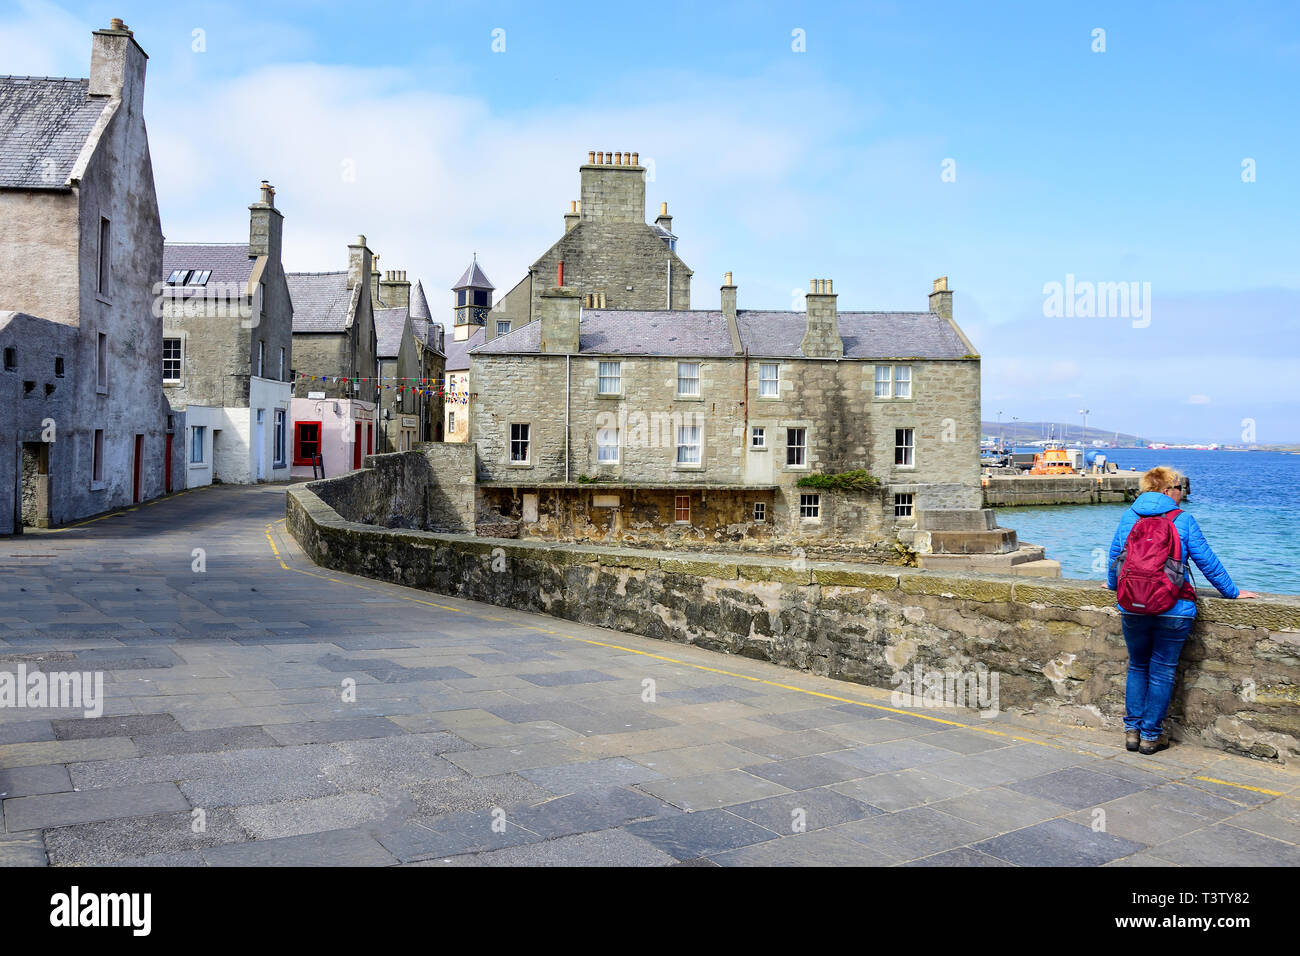 La rue commerciale, (montrant Jimmy Perez cottage dans la série TV), Shetland Lerwick, Shetland, îles du Nord, Ecosse, Royaume-Uni Banque D'Images